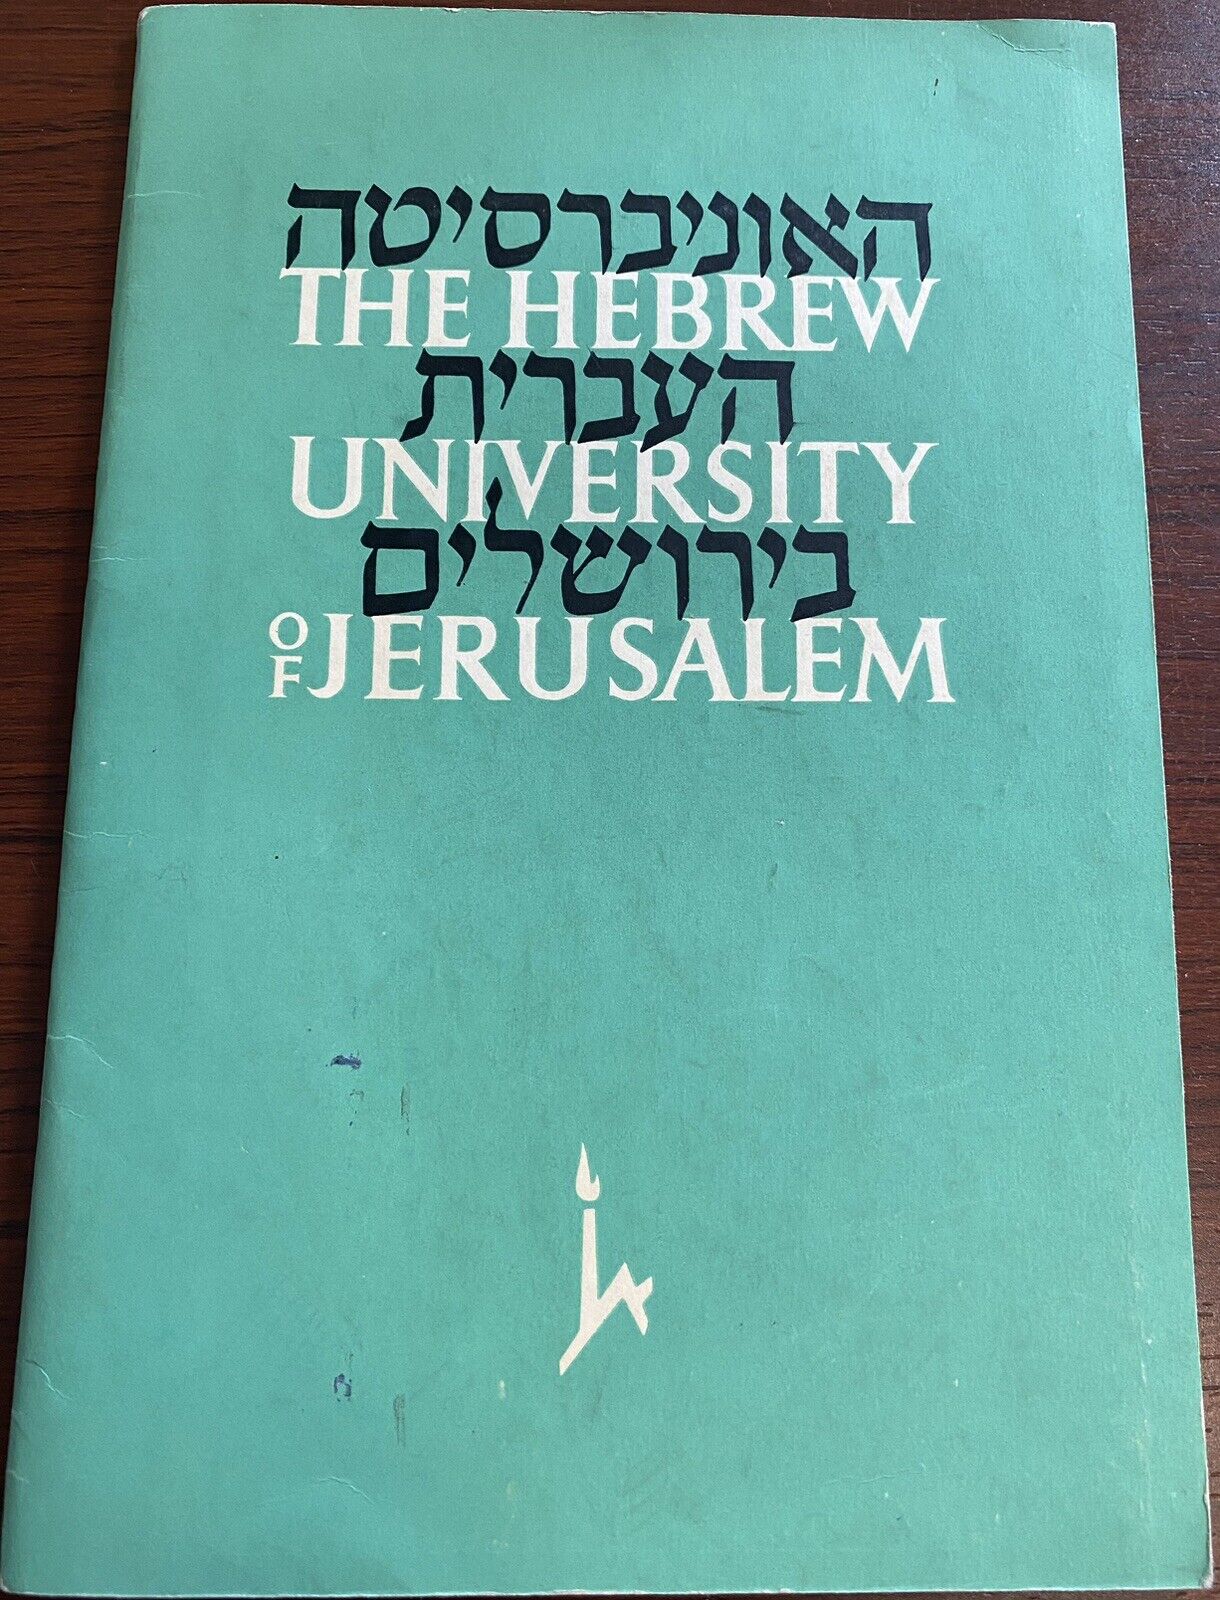 The Hebrew University Of Jerusalem Booklet 1964 Israel